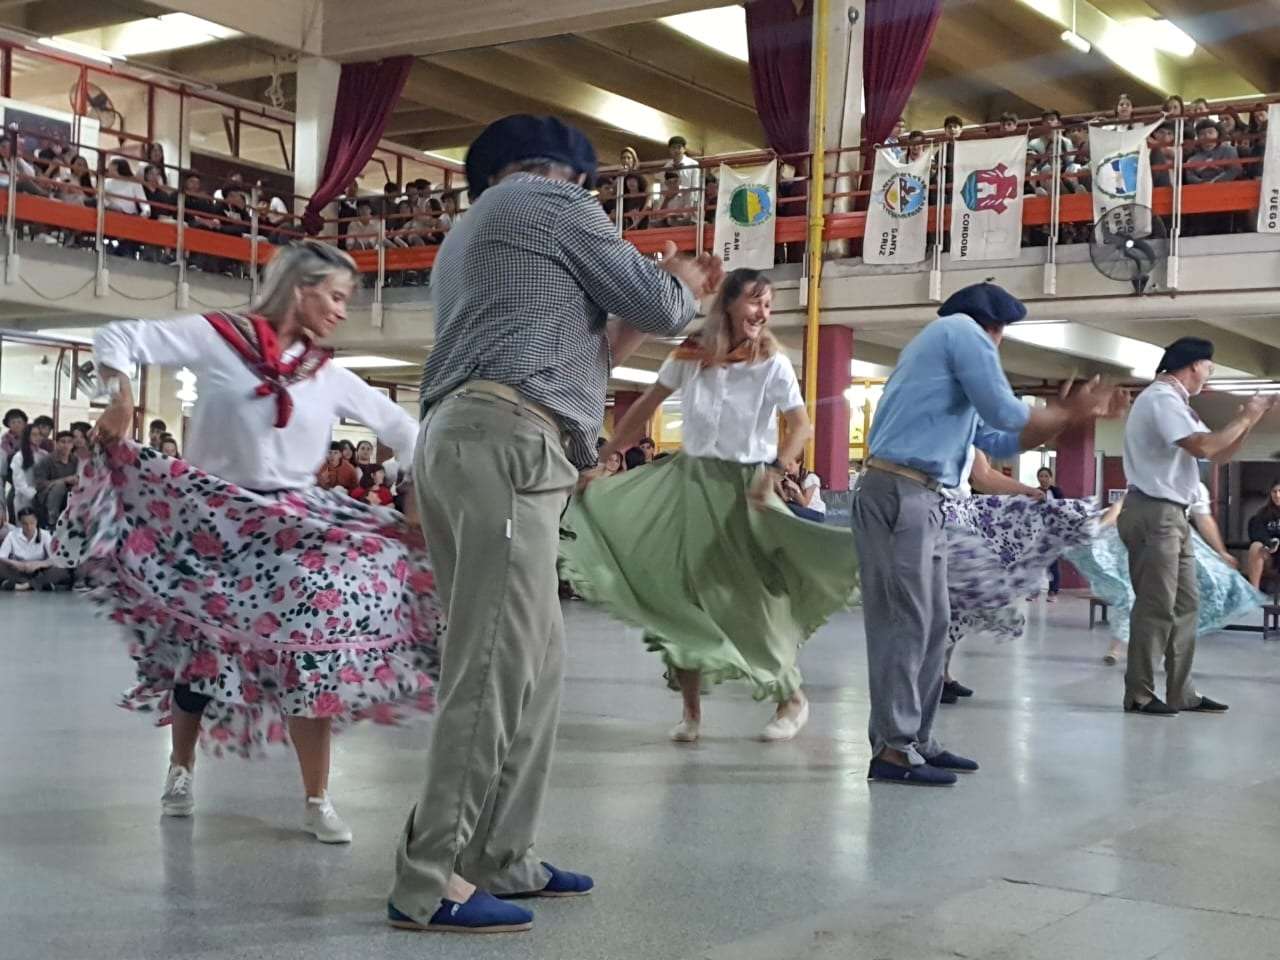 La danza tradicional representando las raíces argentinas.